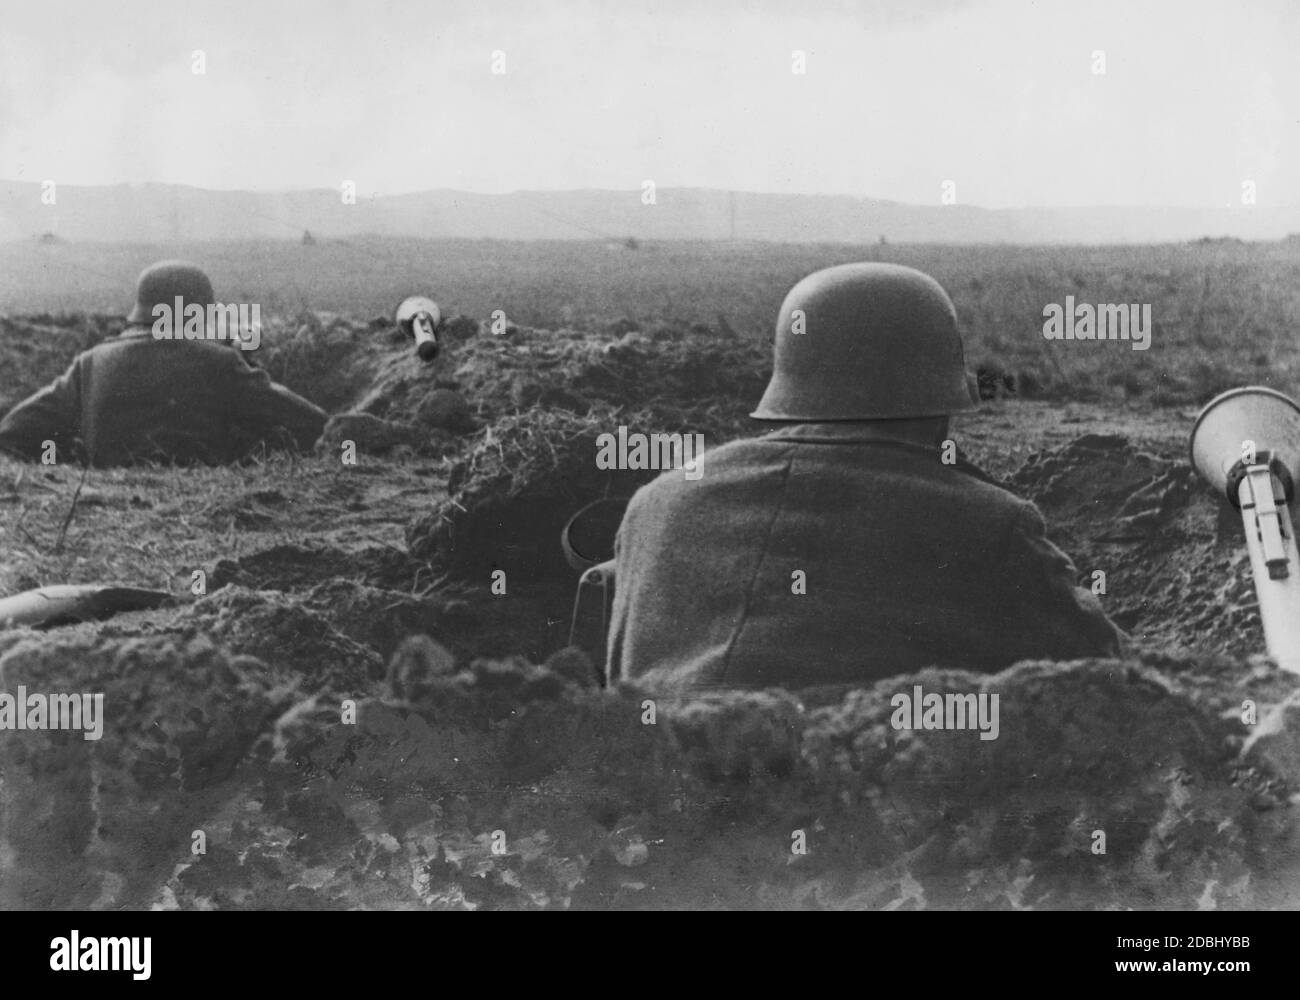 Infanteristen in Foxholes an der Ostfront, daneben sind Bazookas zur Verteidigung gegen russische Panzer. PK Foto: Ellerbrock. Stockfoto